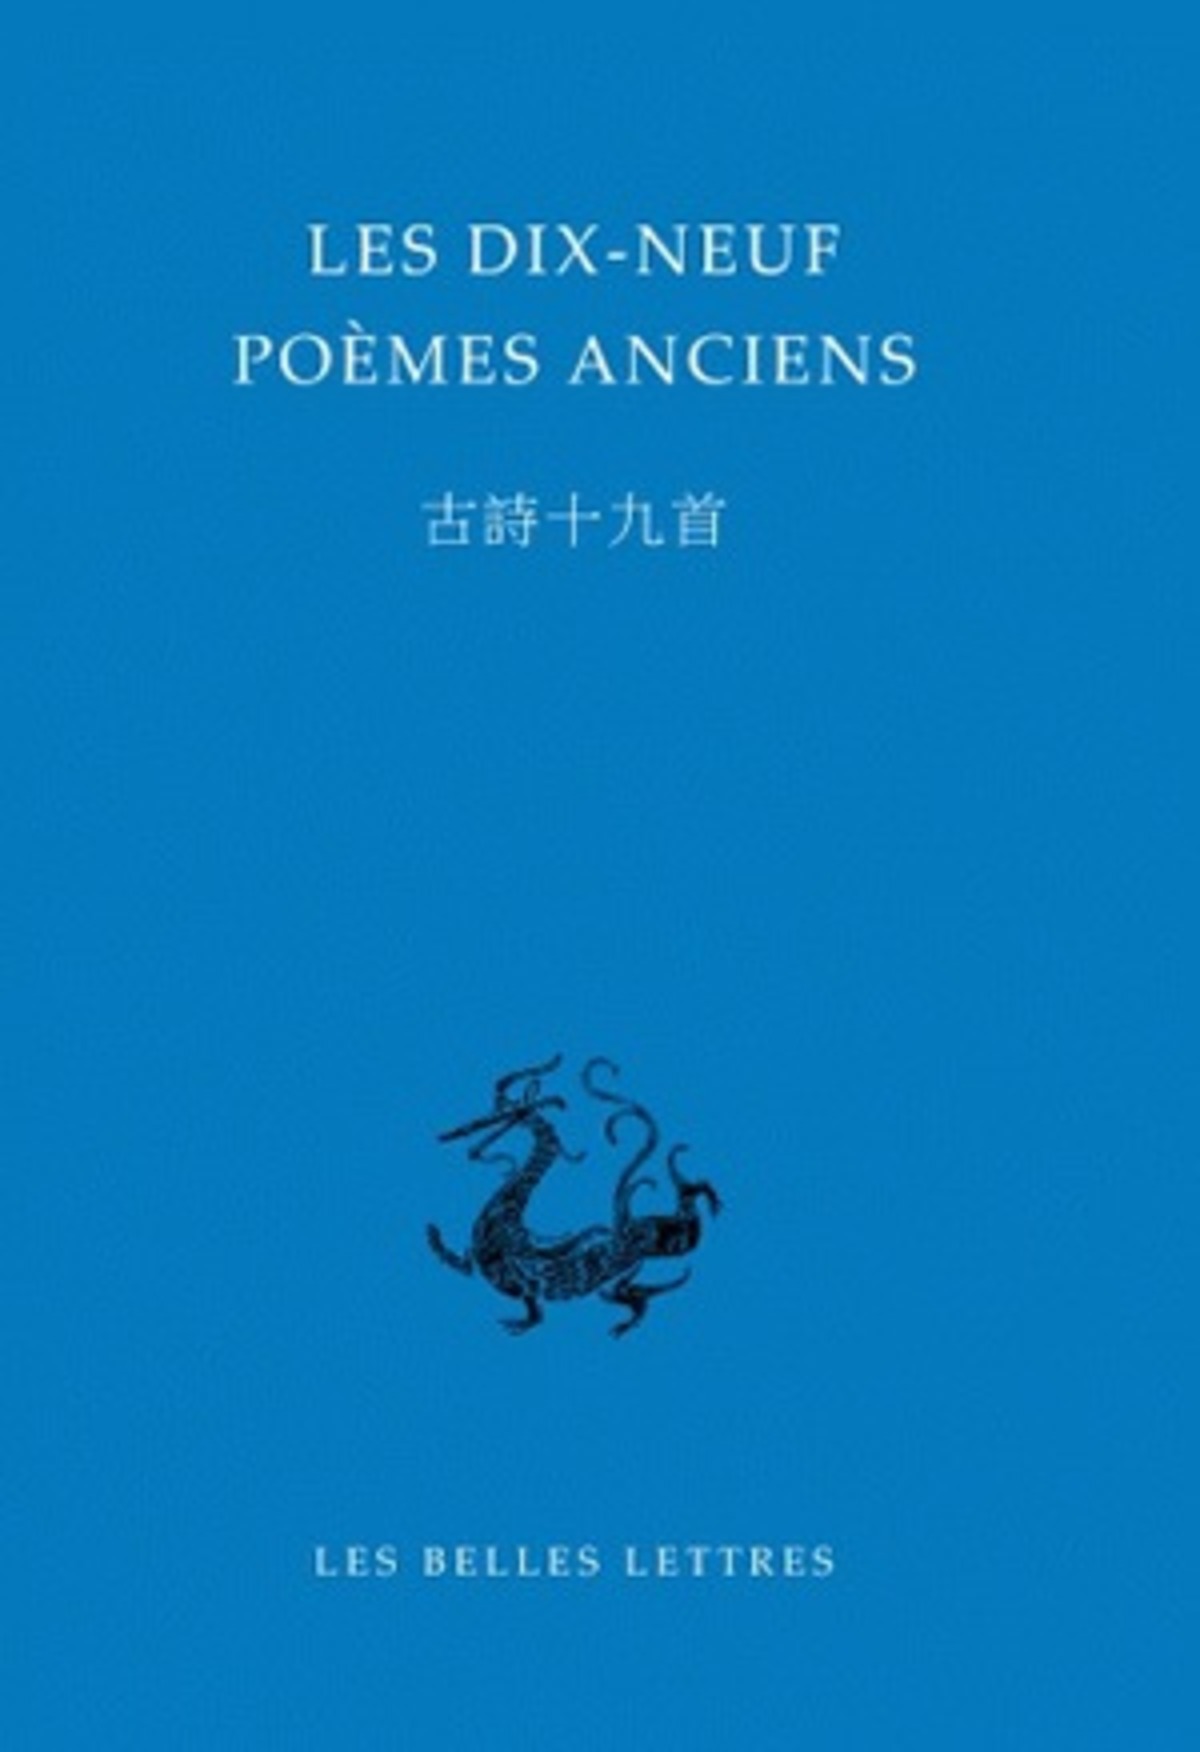 Les Dix-neuf poèmes anciens